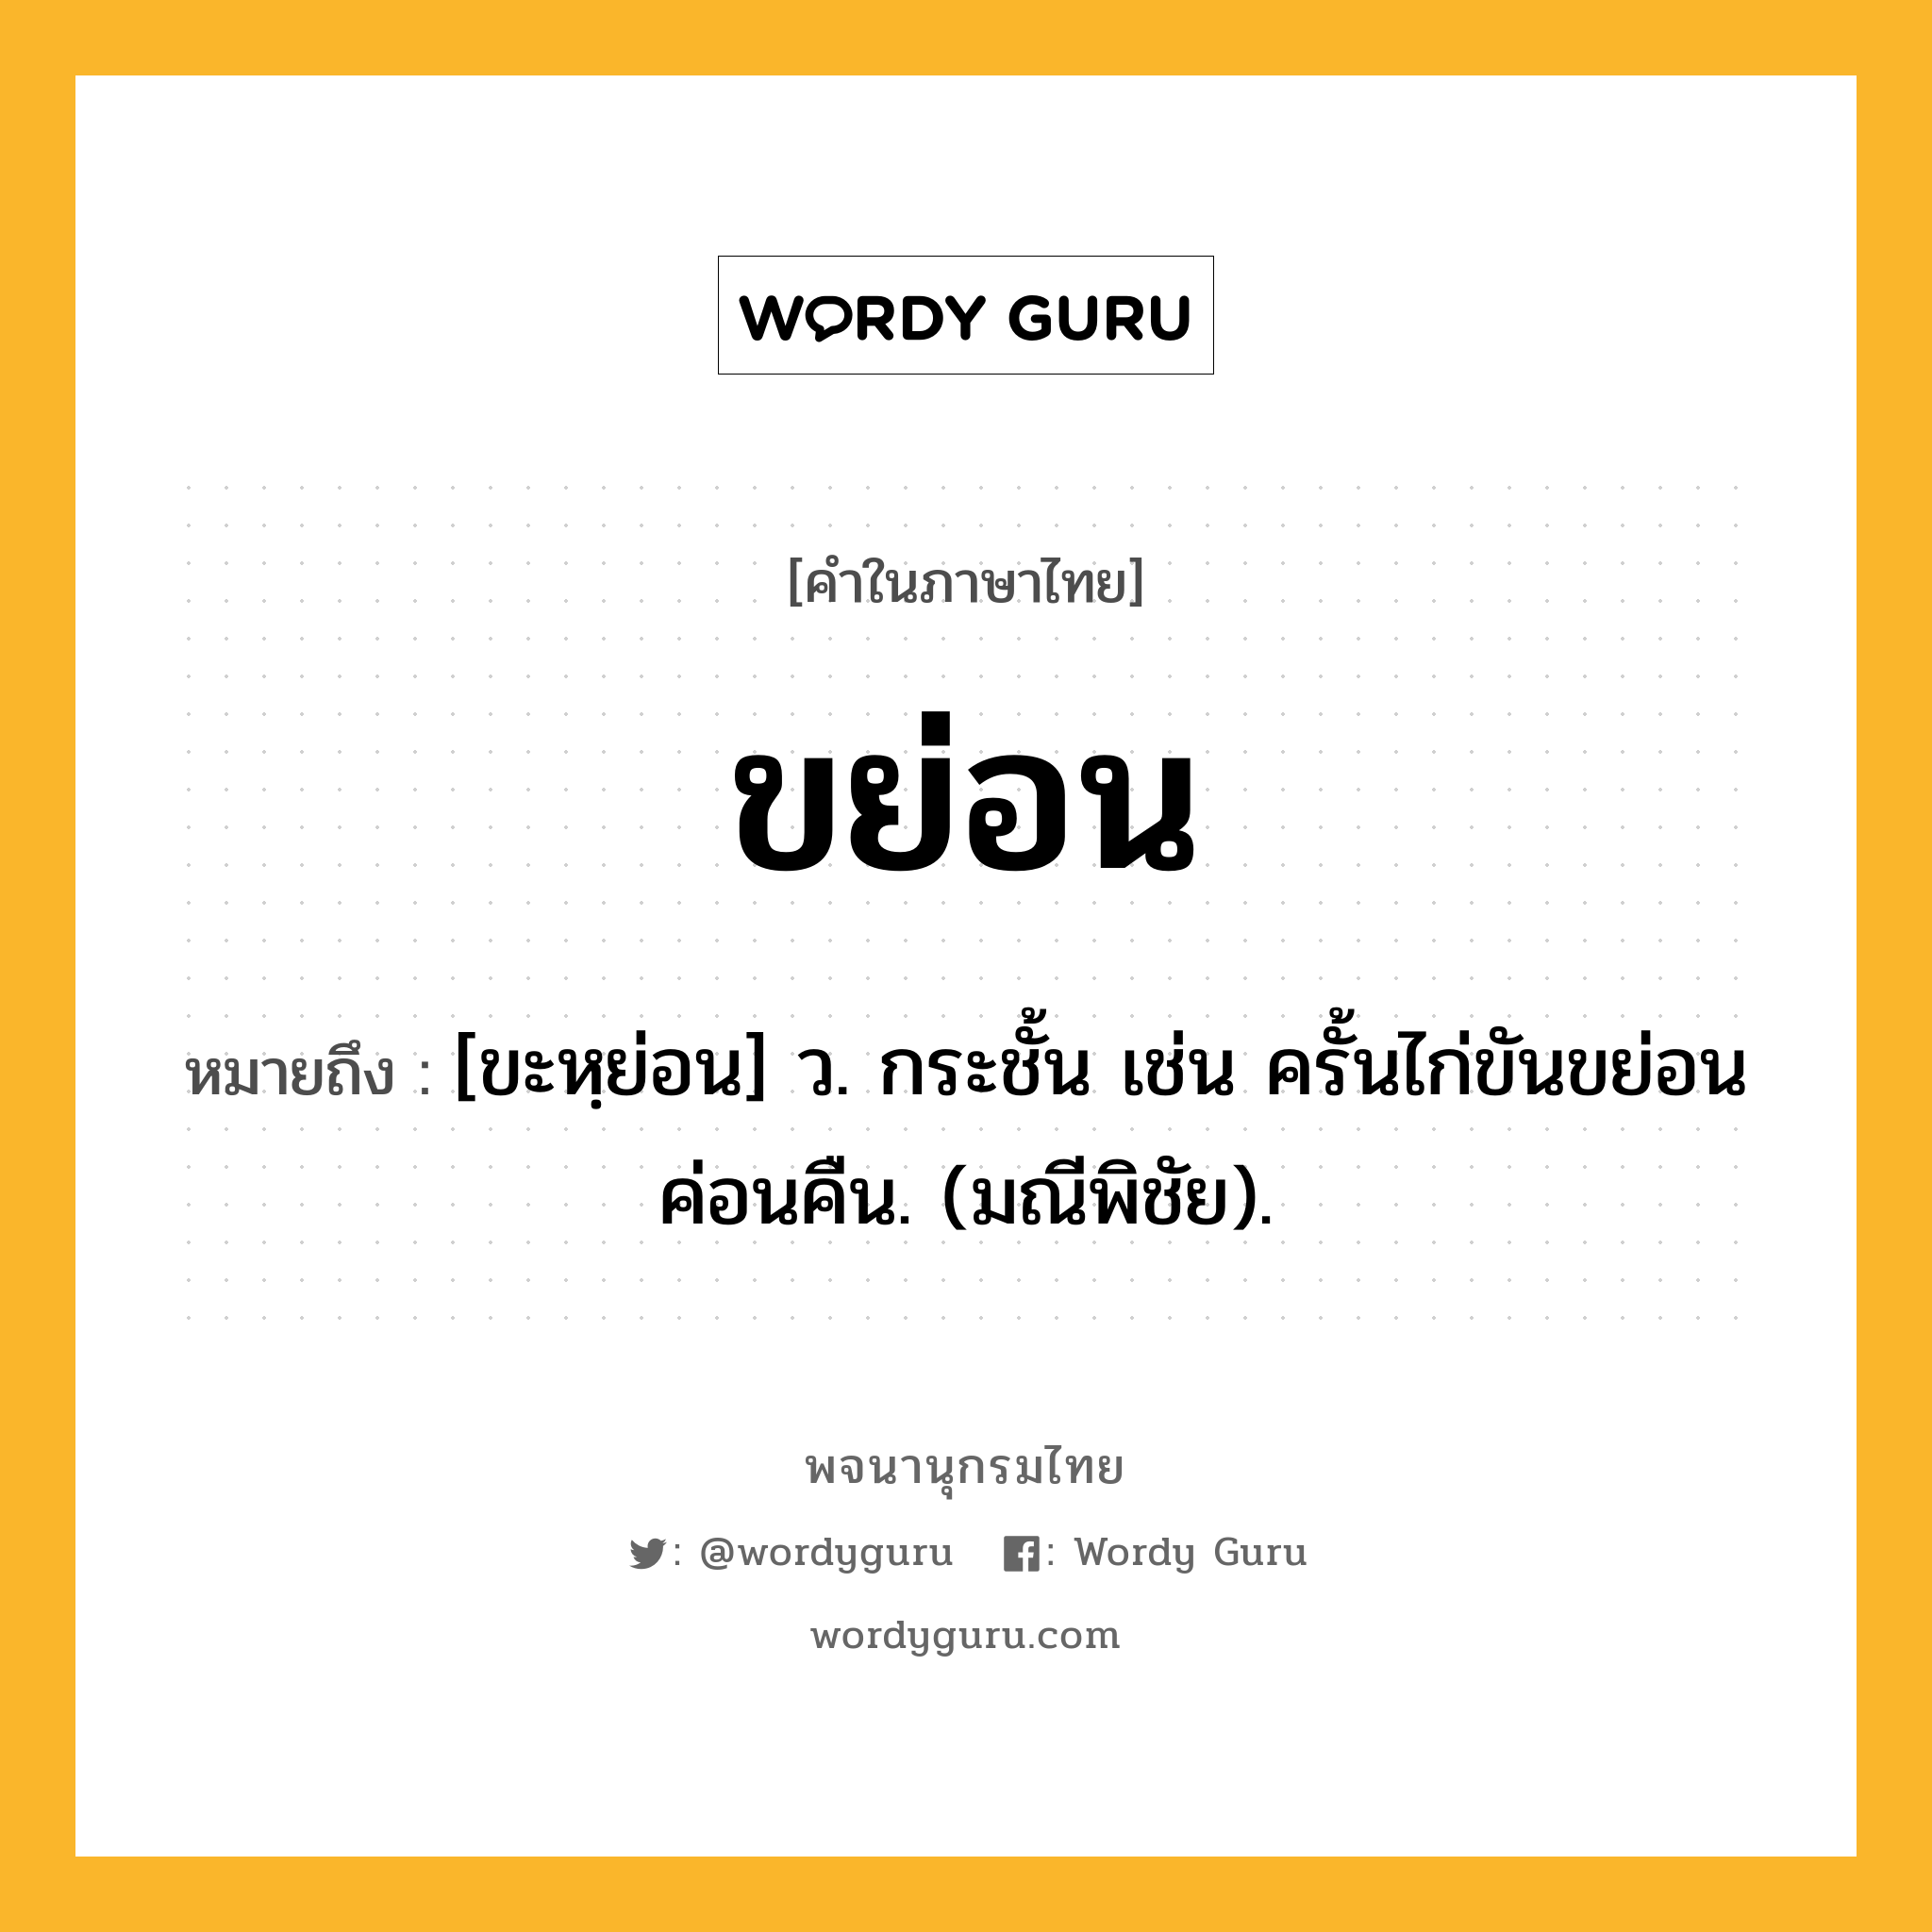 ขย่อน ความหมาย หมายถึงอะไร?, คำในภาษาไทย ขย่อน หมายถึง [ขะหฺย่อน] ว. กระชั้น เช่น ครั้นไก่ขันขย่อนค่อนคืน. (มณีพิชัย).